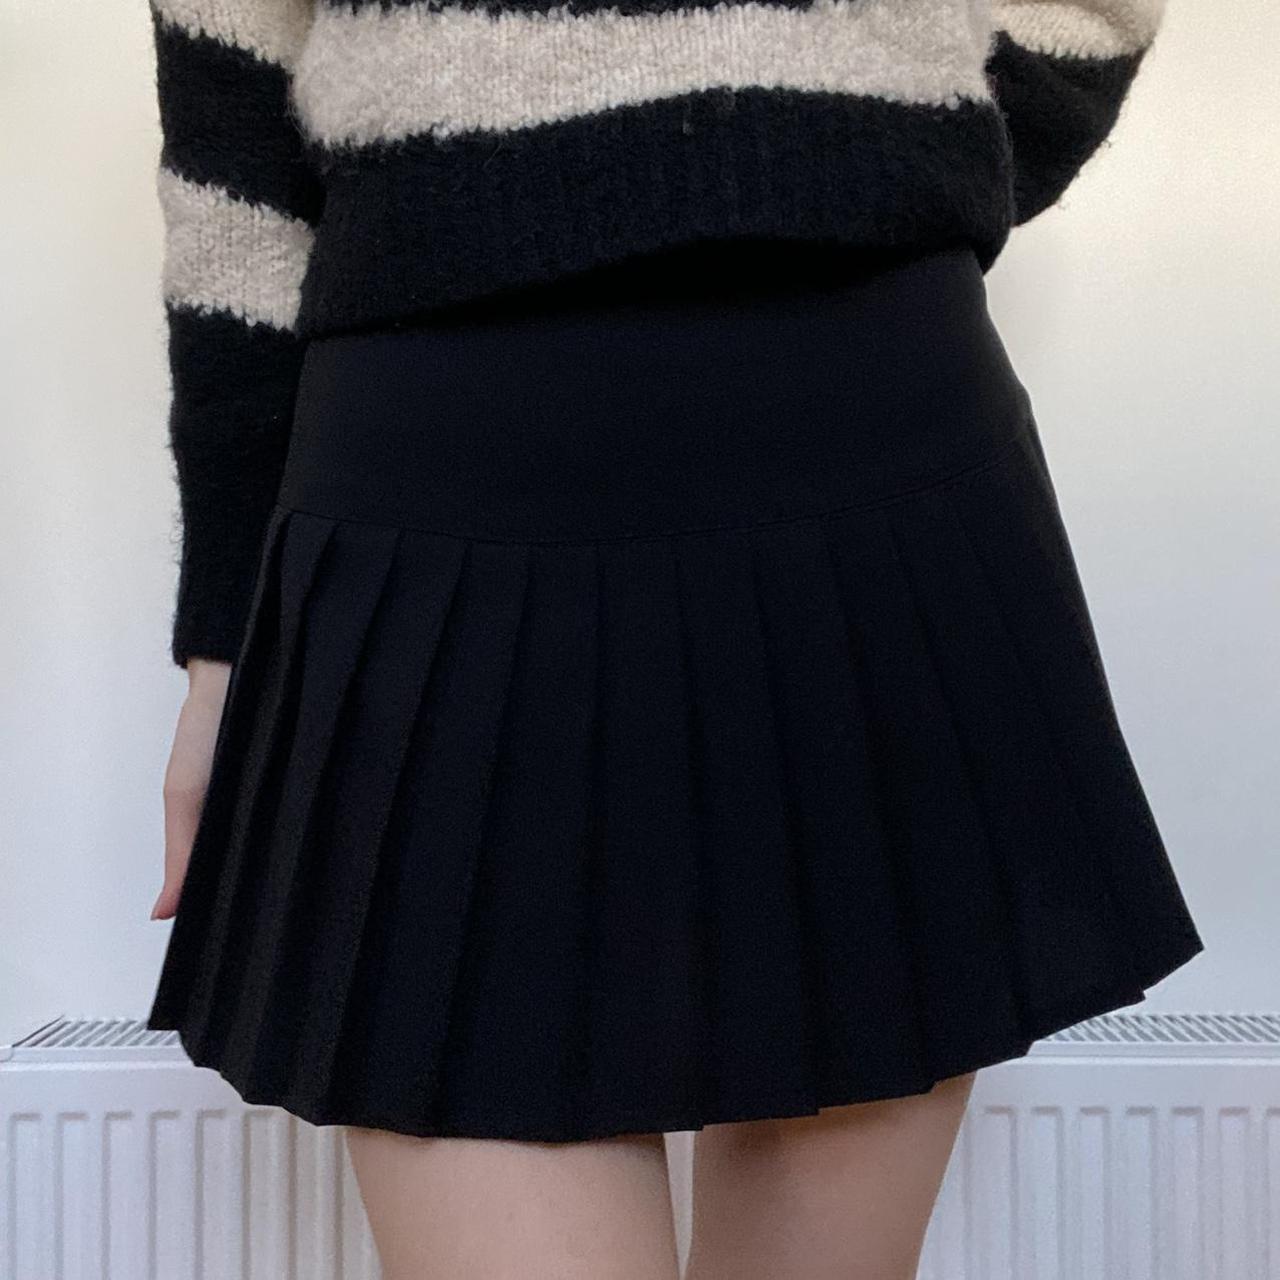 Black pleated tennis mini skirt Super cute pleated... - Depop